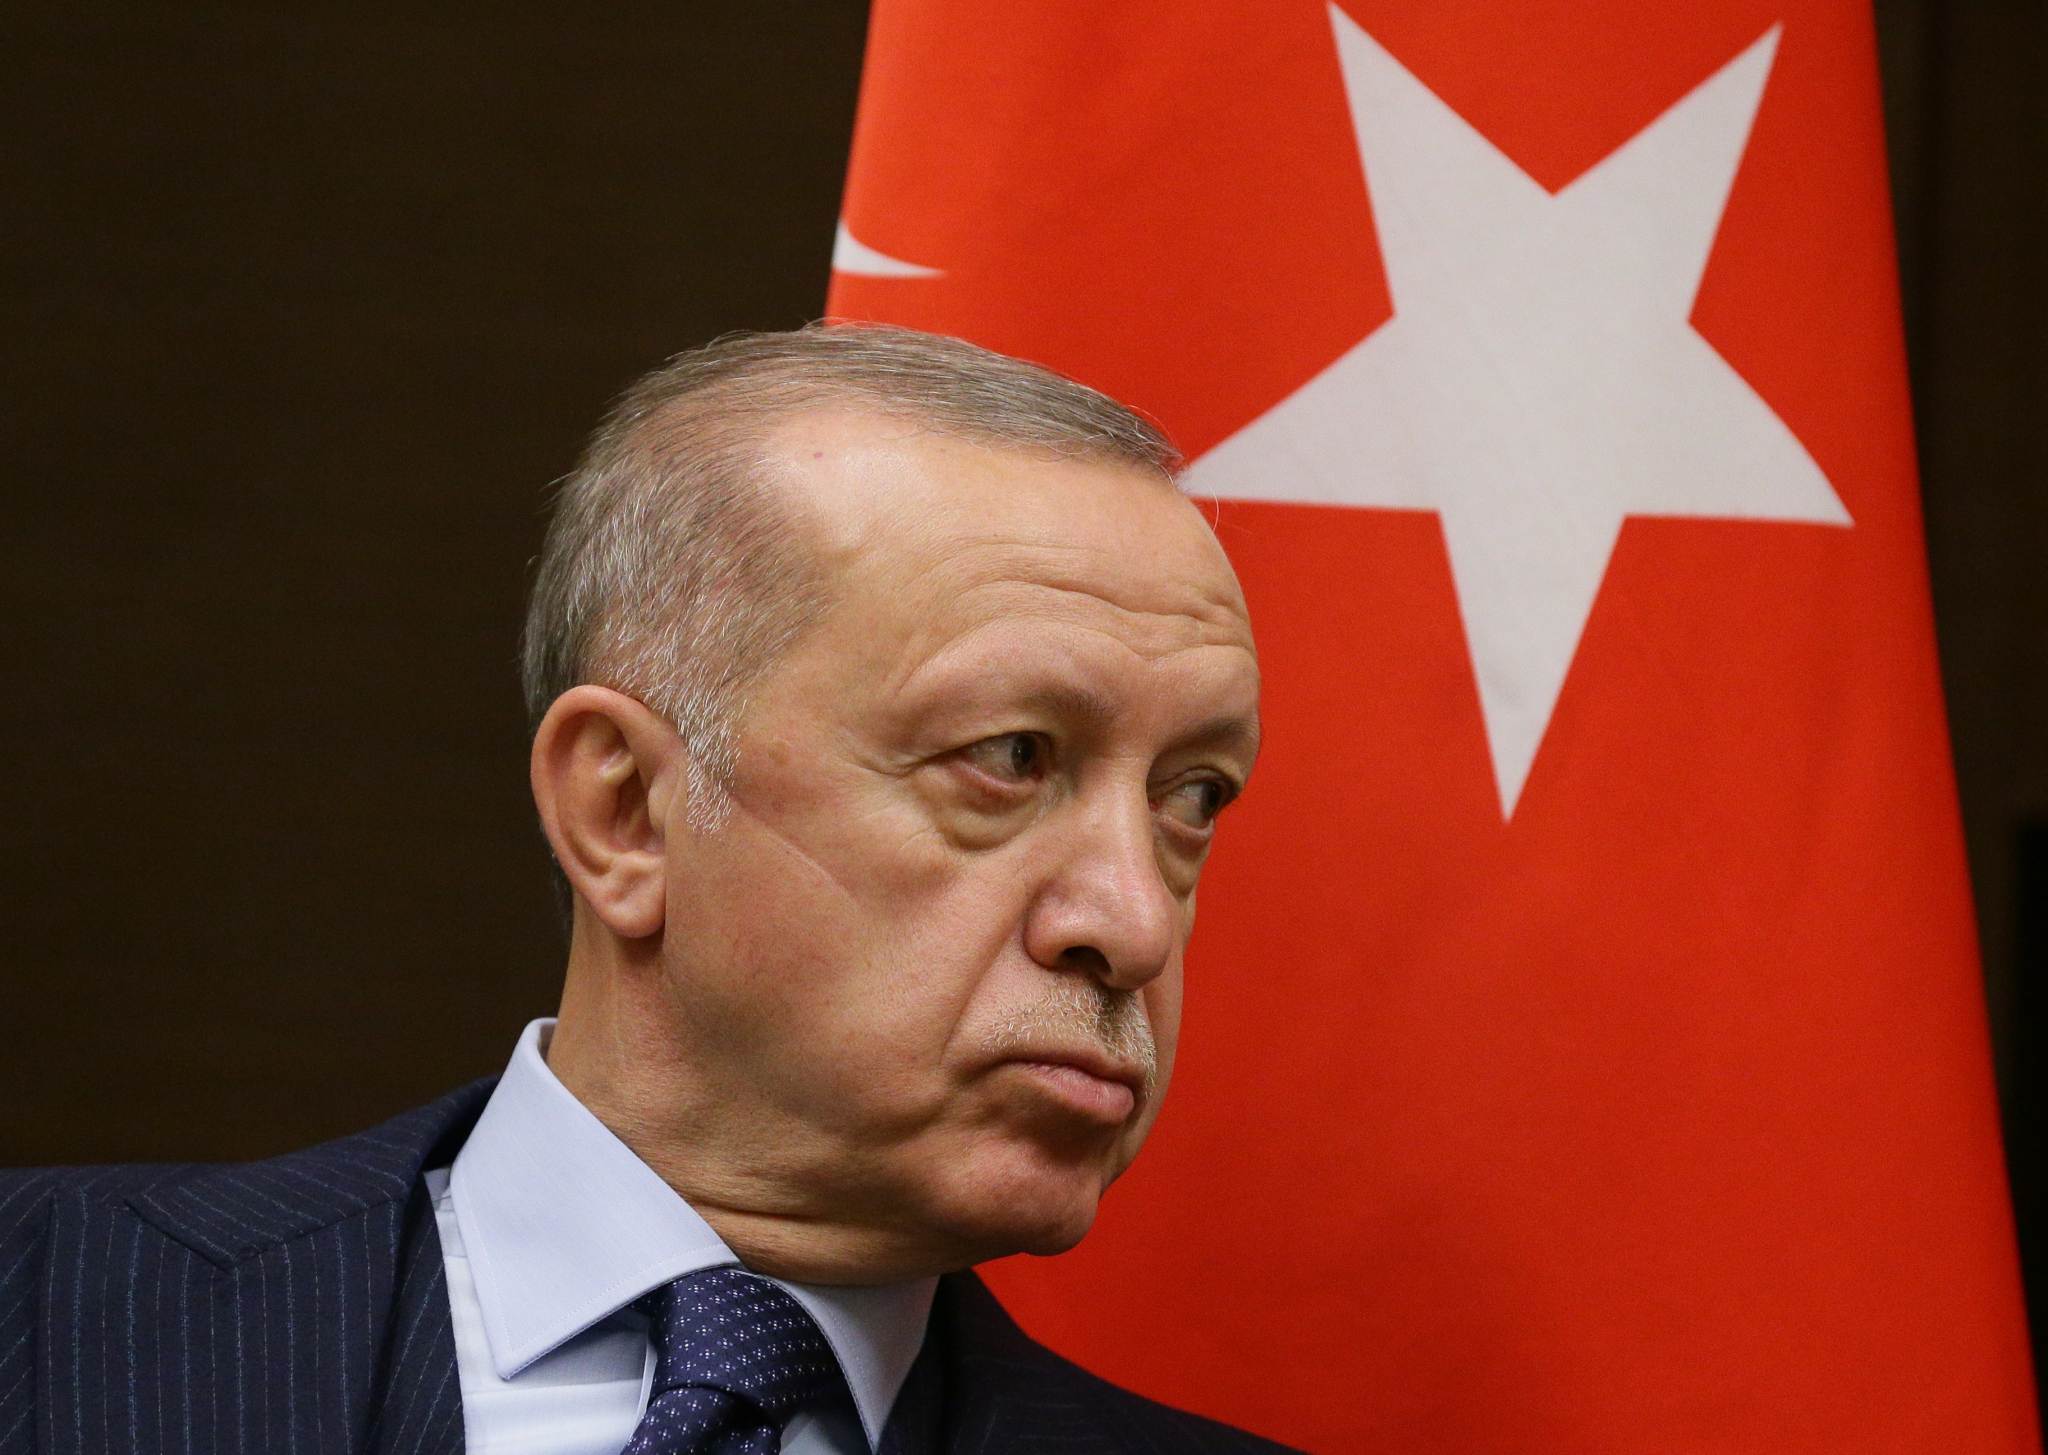 BES ZBOG SARADNJE SA RUSIJOM Članstvo Turske u NATO-u pod znakom pitanja?